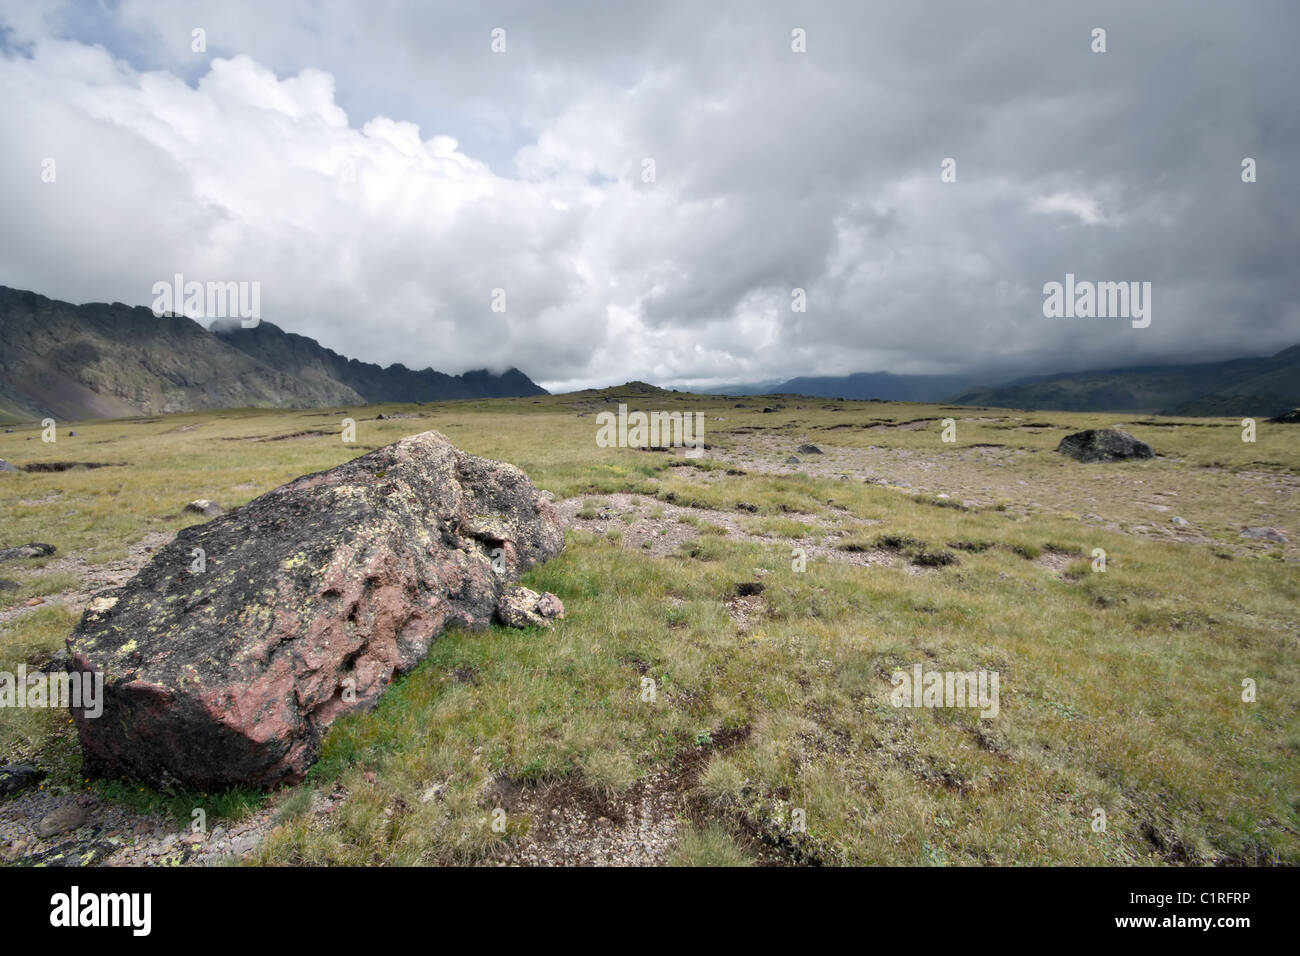 Highland pascolo (Prato) con pietre contro la nebbia di nuvole. Montagne del Caucaso. Kabardino-Balkaria. La Russia. Foto Stock